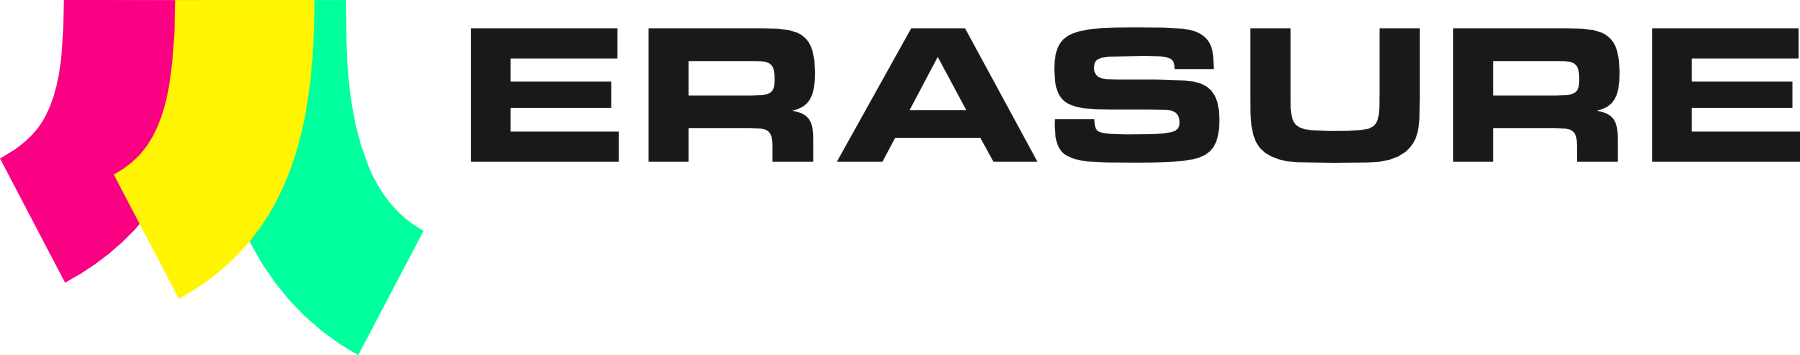 Erasure logo